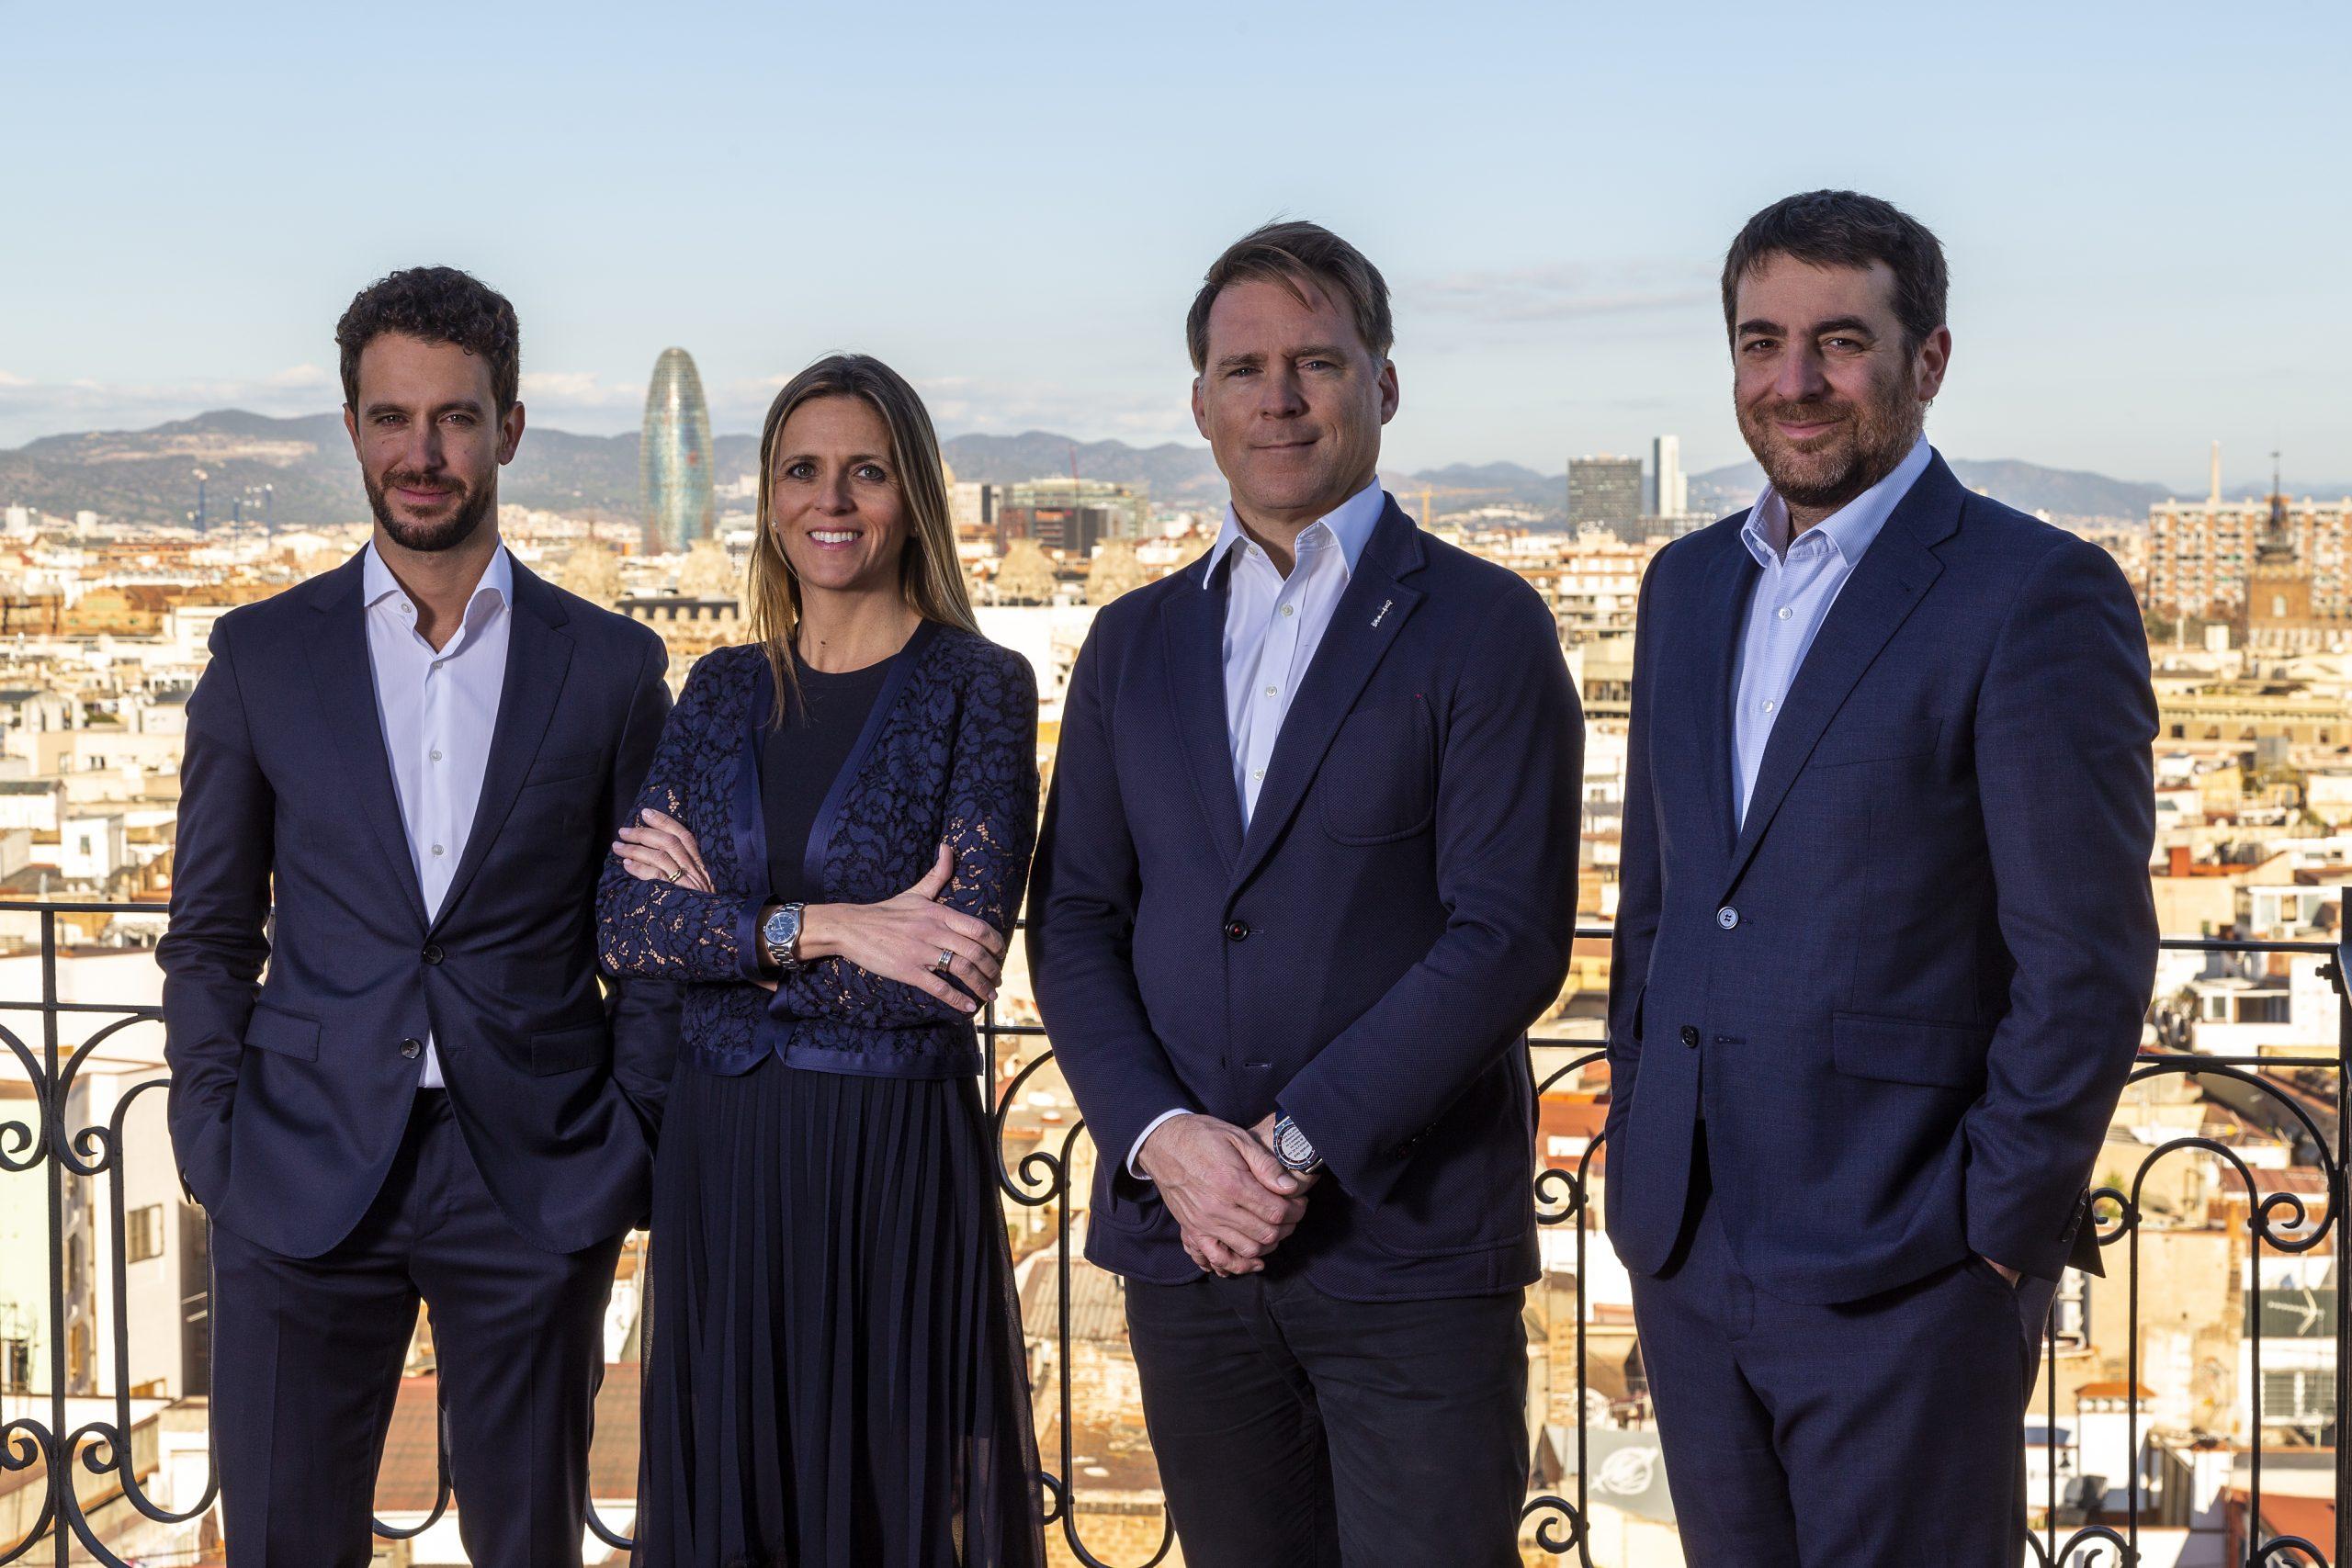 Asabys anuncia el primer cierre de Sabadell Asabys Health Innovation Investments II, con compromisos de €100M, y nombra a Sylvain Sachot y Guillem Masferrer como nuevos socios